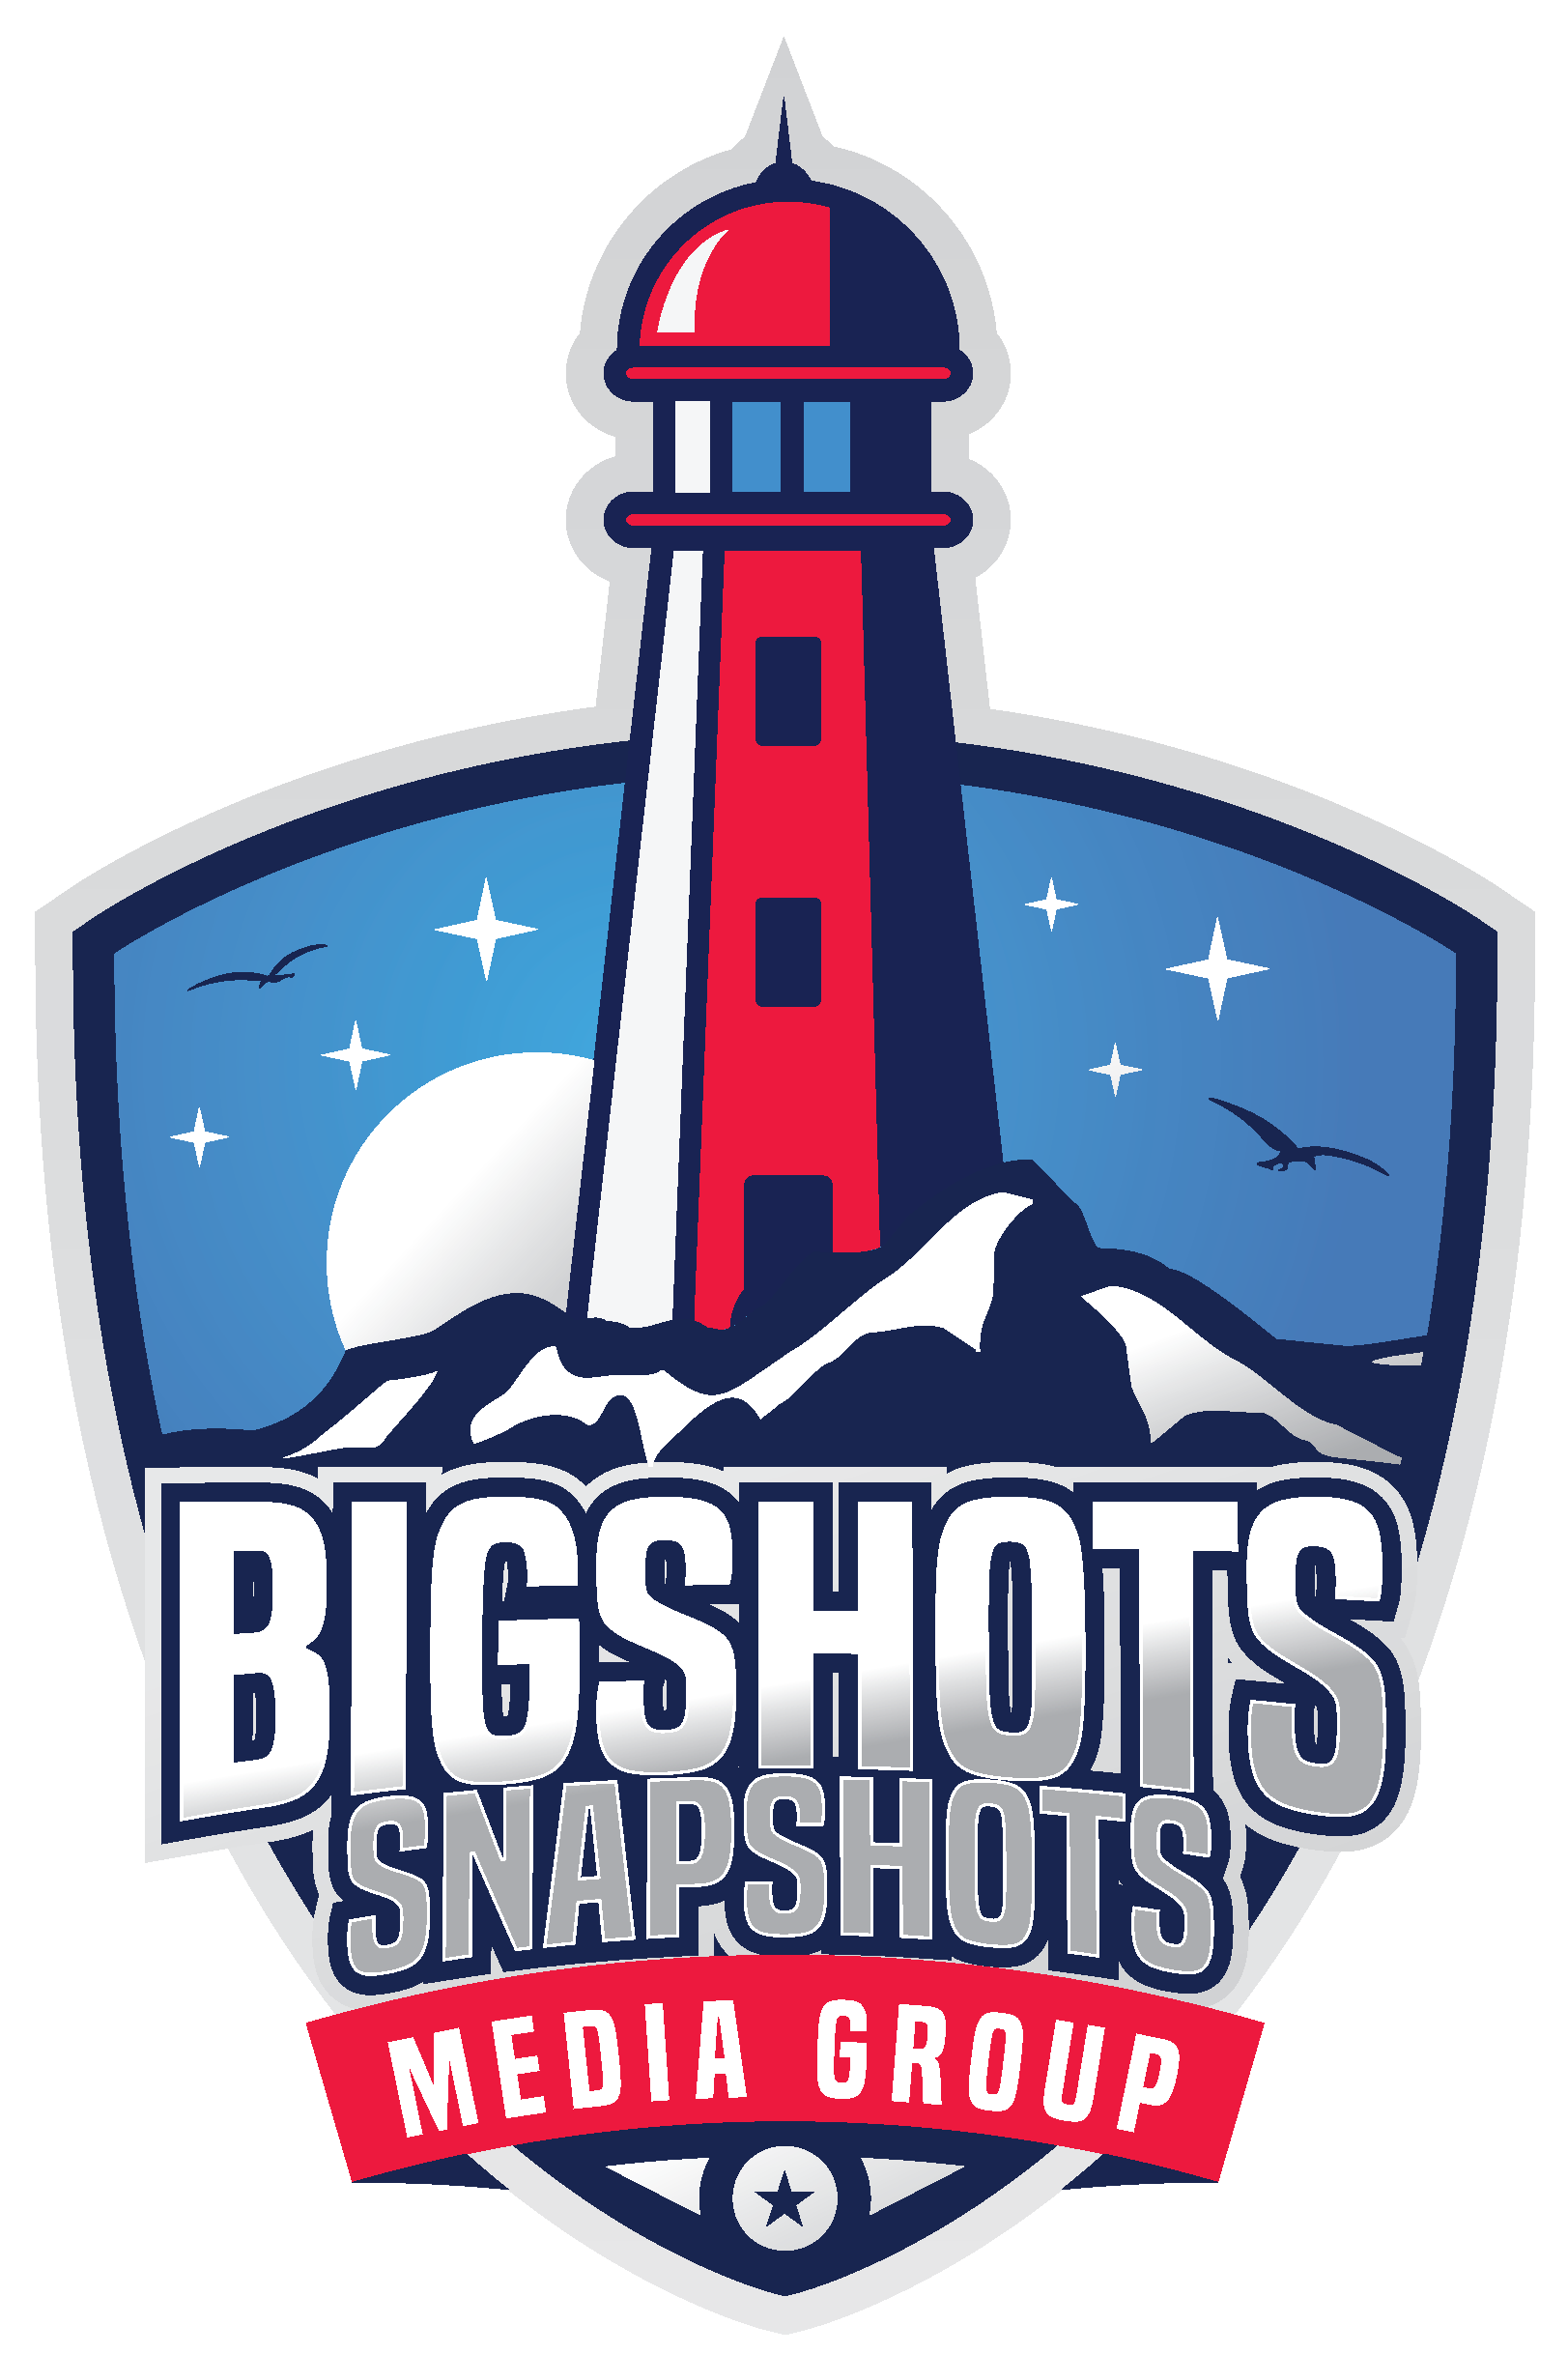 Bigshots Snapshots Media Group